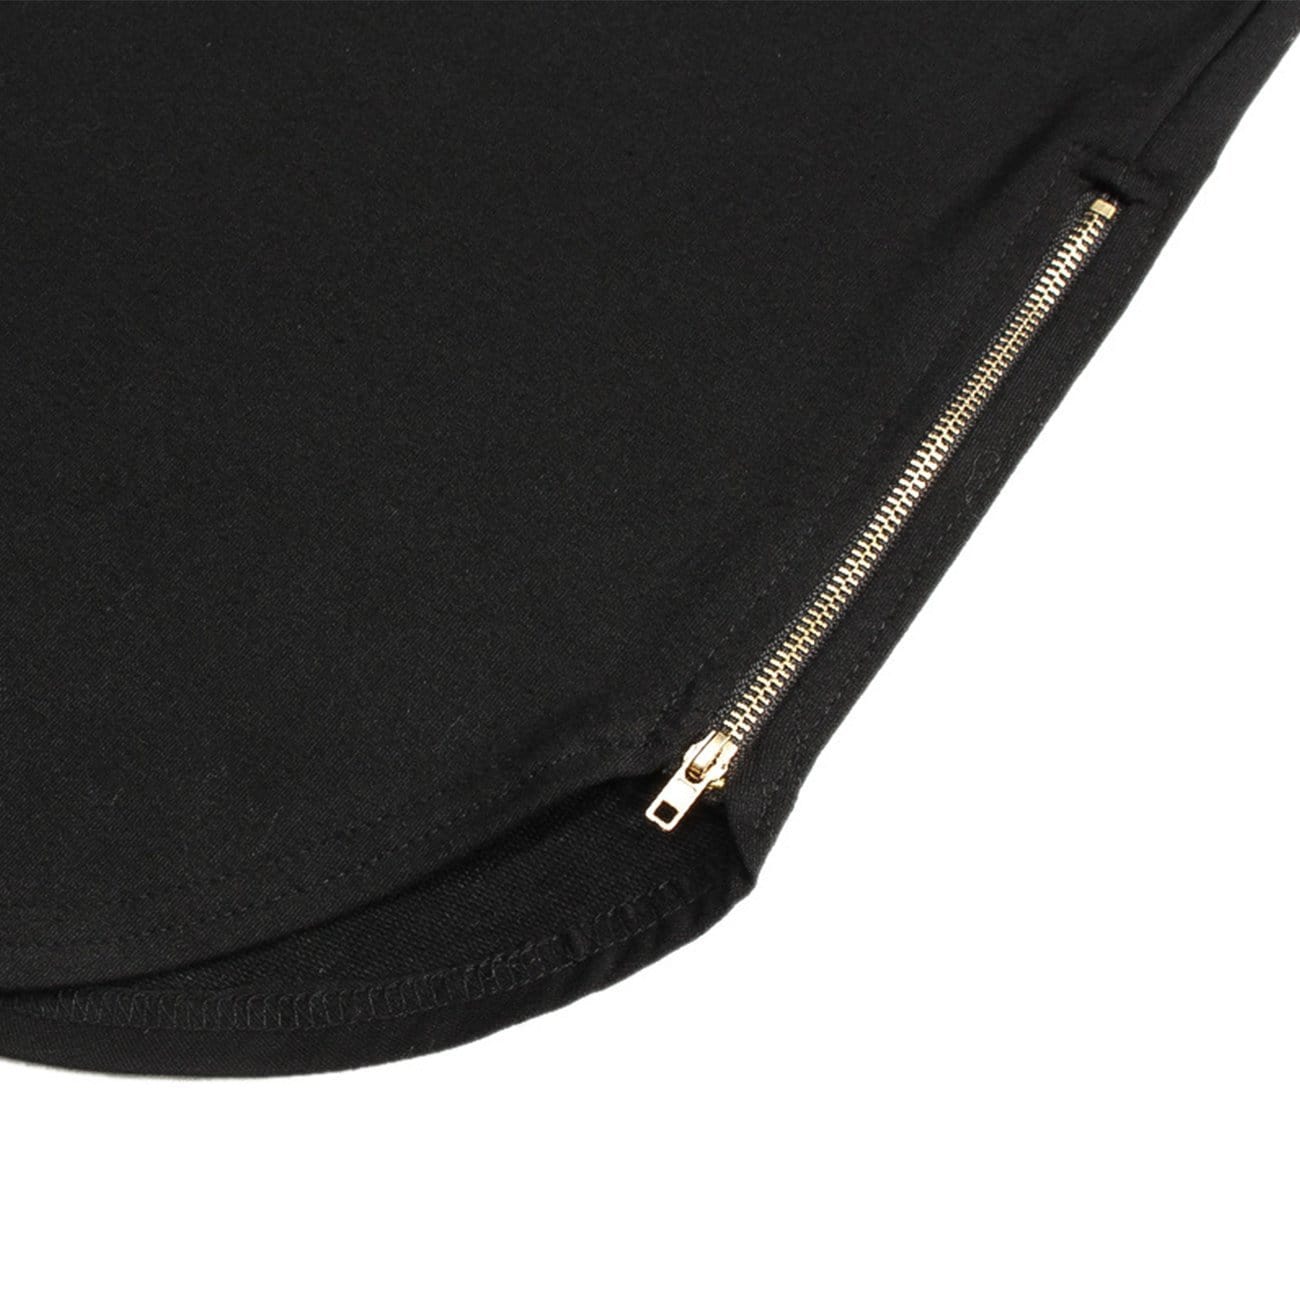 Function Side Zipper Hooded Tee Streetwear Brand Techwear Combat Tactical YUGEN THEORY